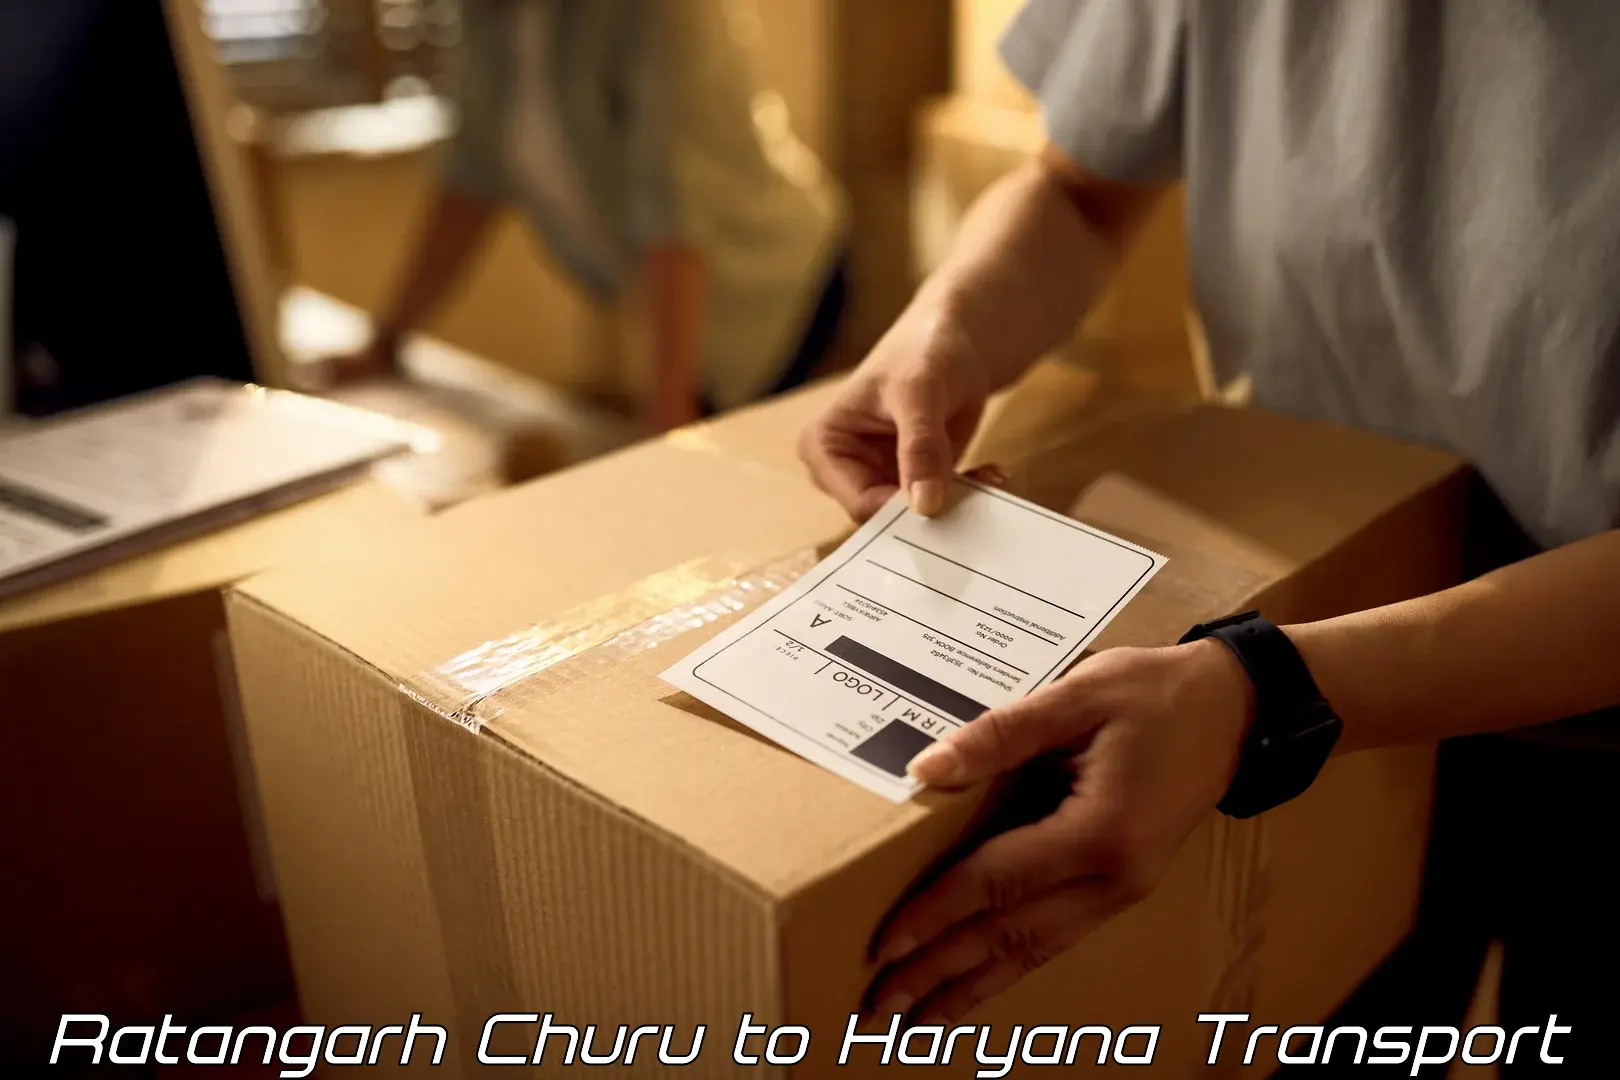 All India transport service Ratangarh Churu to Chirya